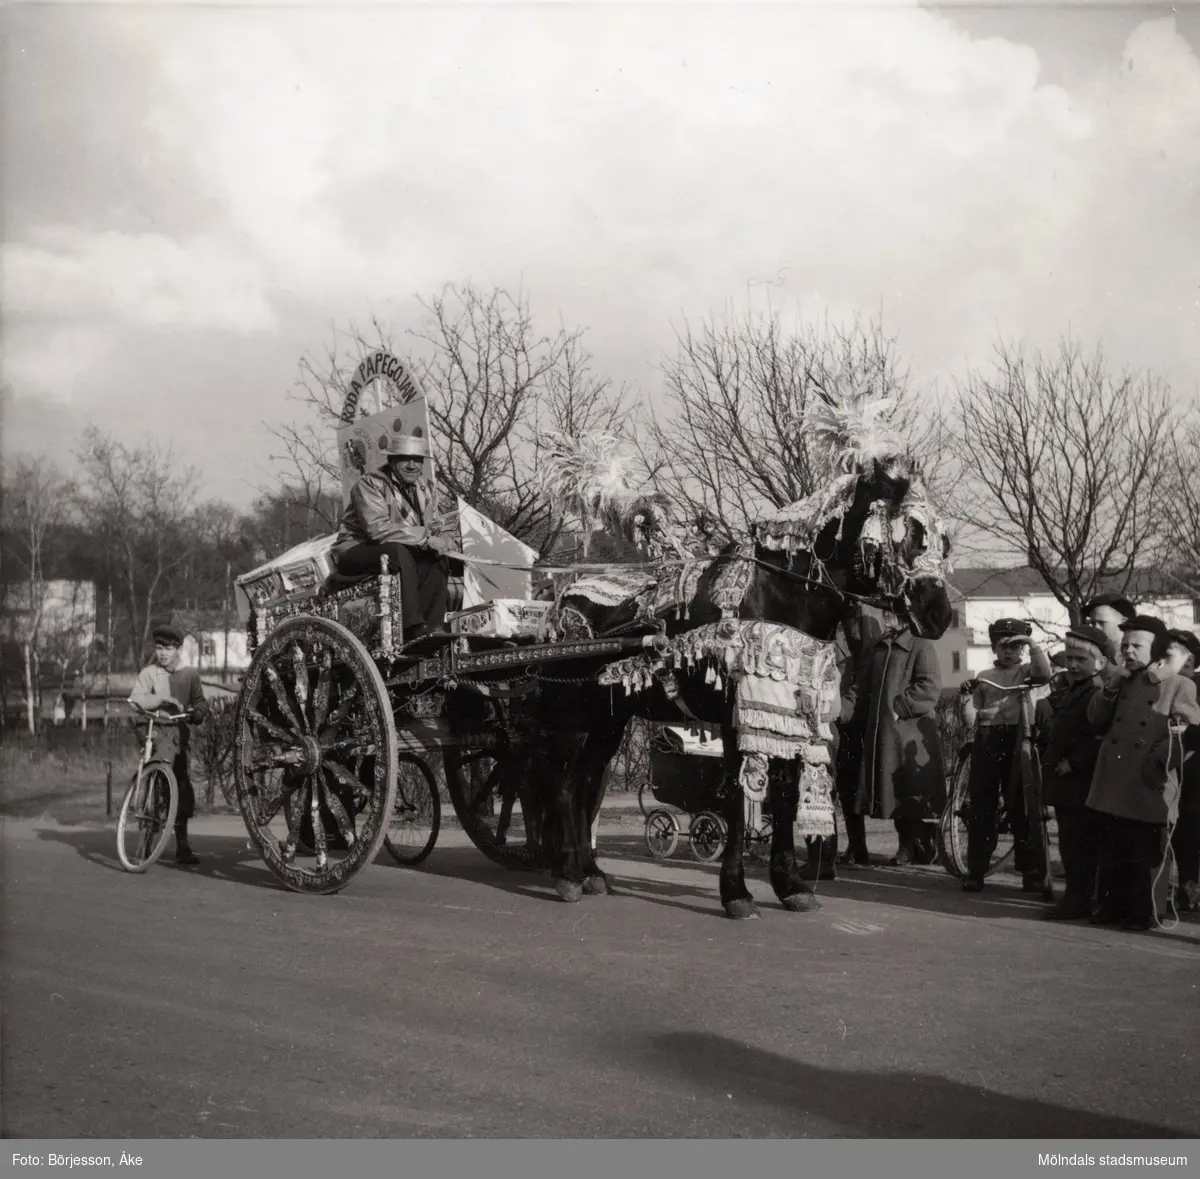 Motiv från Solängen. Häst med vagn och kusk bär dekorationer. Möjligtvis reklam av något slag? Skylt med texten "Röda papegojan" på vagnen. Barn på cyklar står runt omkring och tittar på.
Möjligen Frölundagatan på 1950-60-talet.